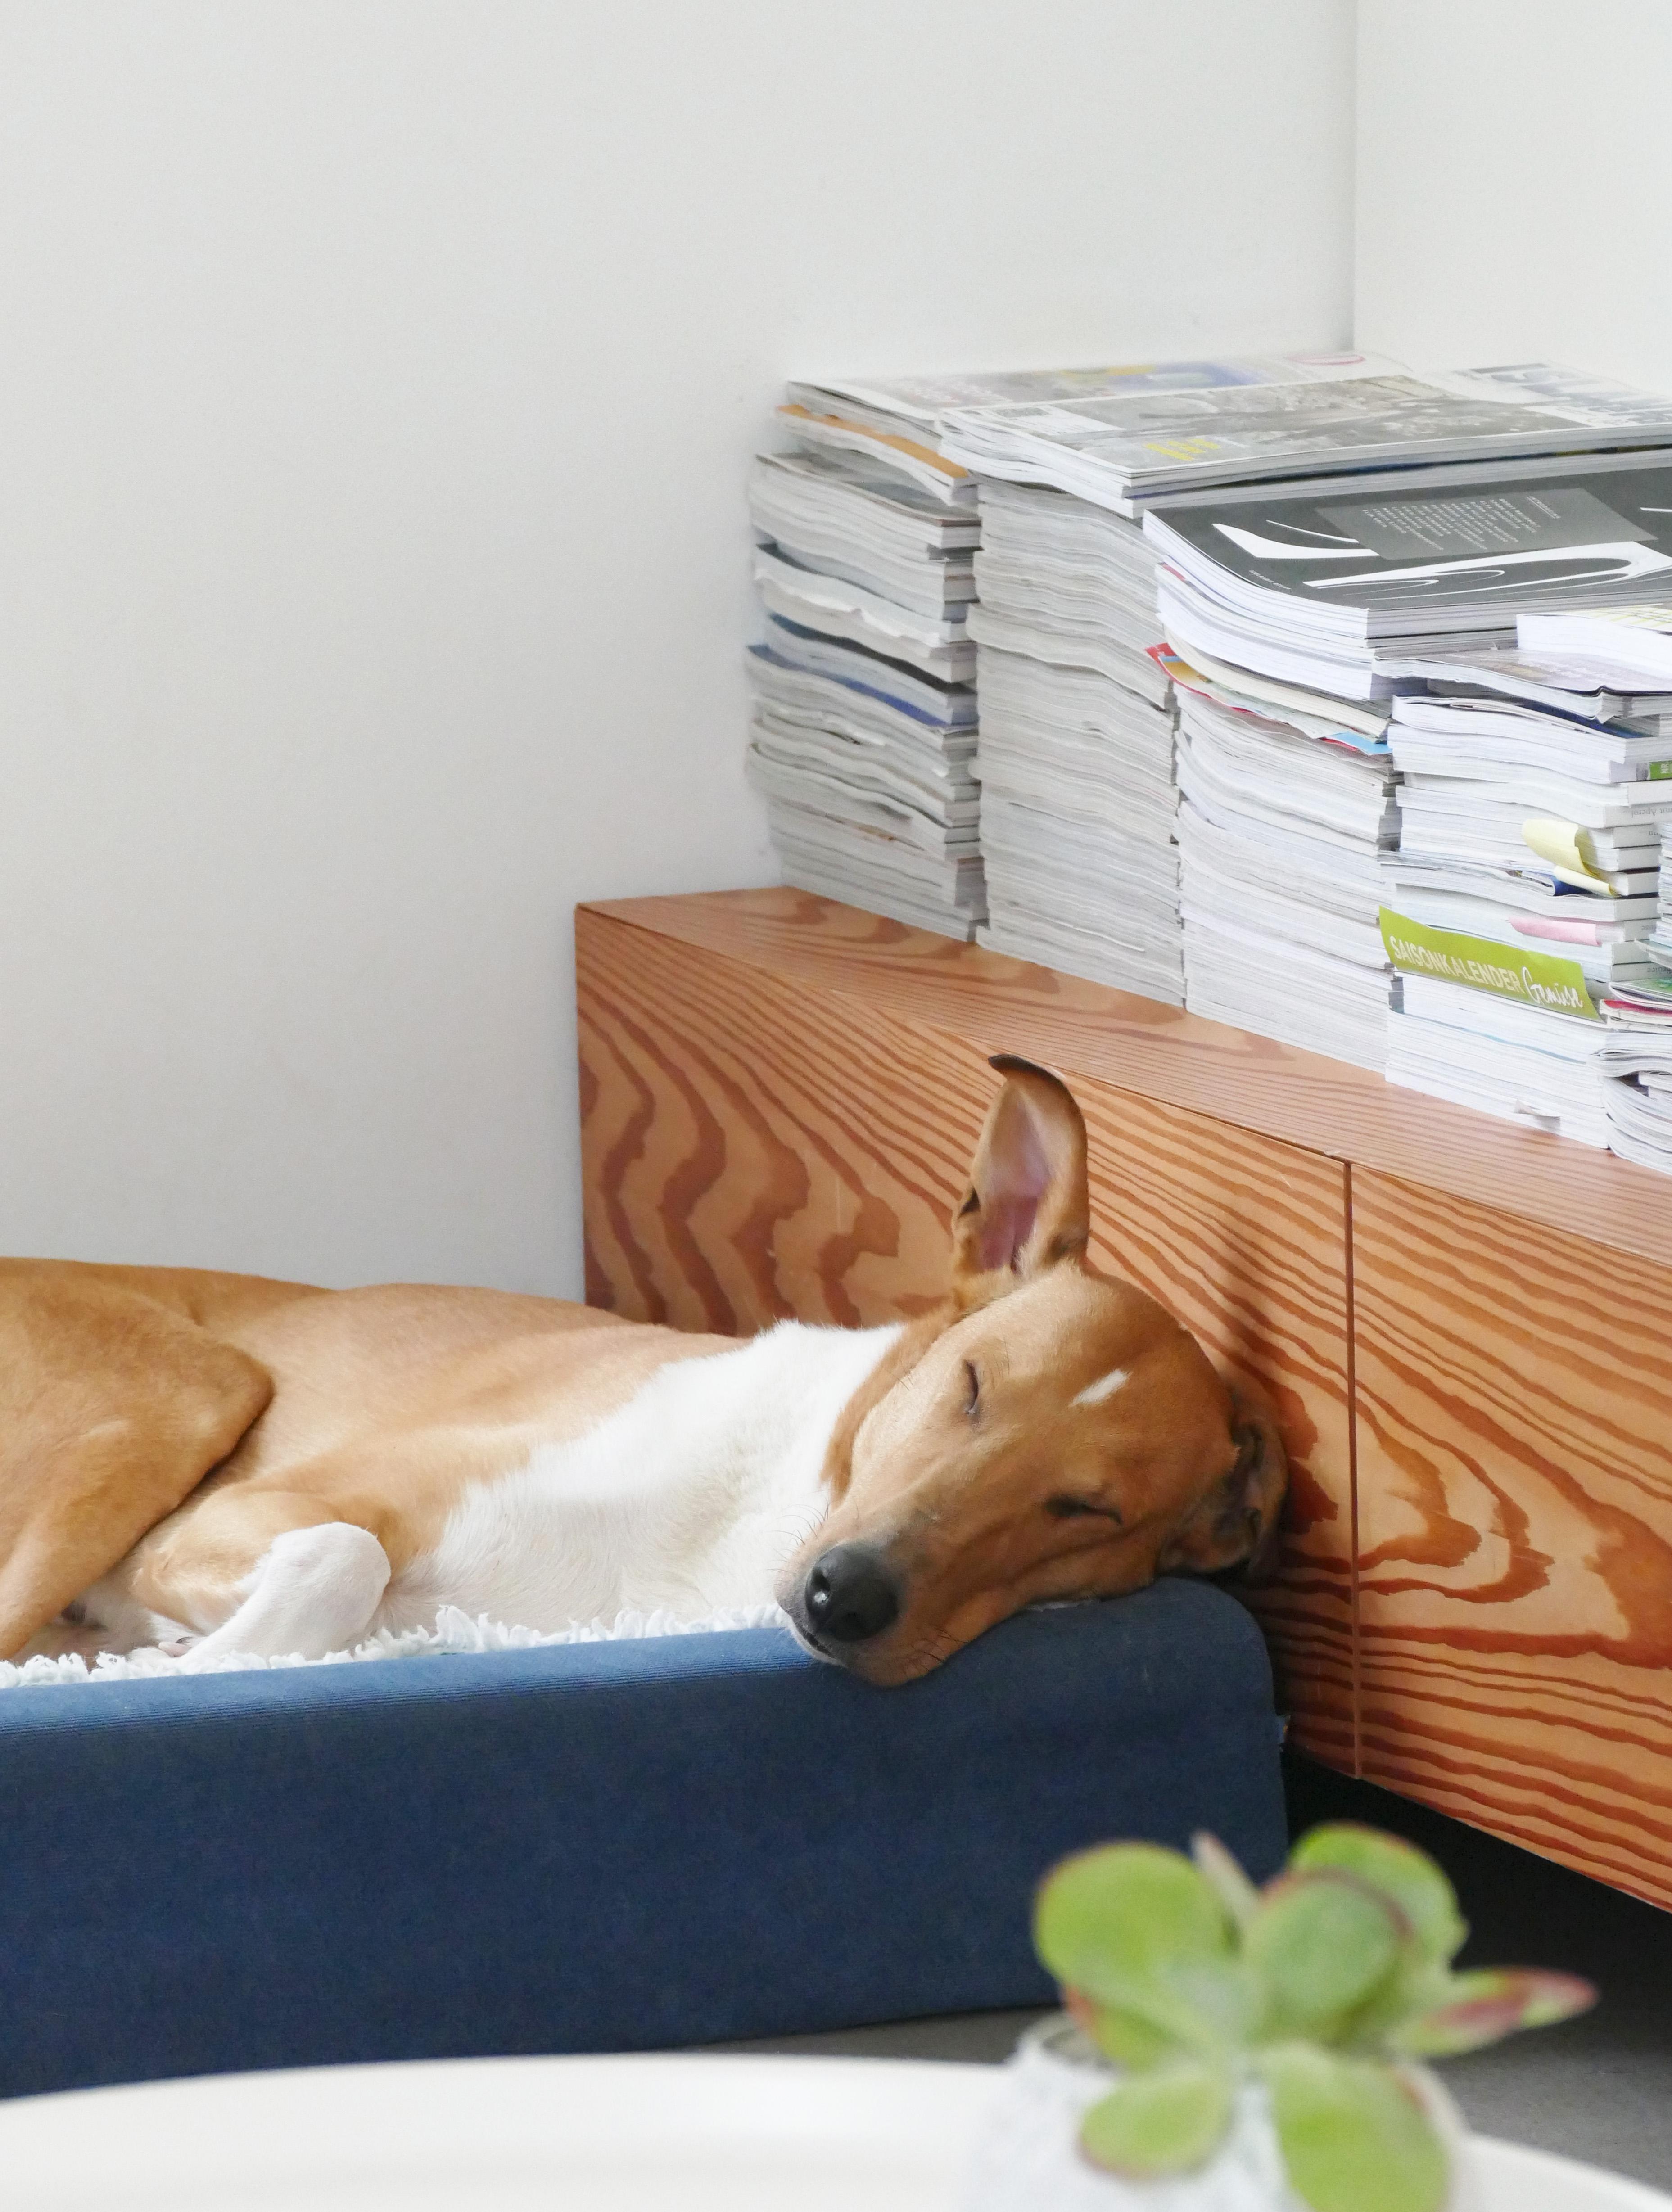 Pst. "Ede" schläft noch. Vielleicht hat er den Stapel COUCHMag gelesen? ;-) #hund #collie #gemütlich #couch#couchliebt